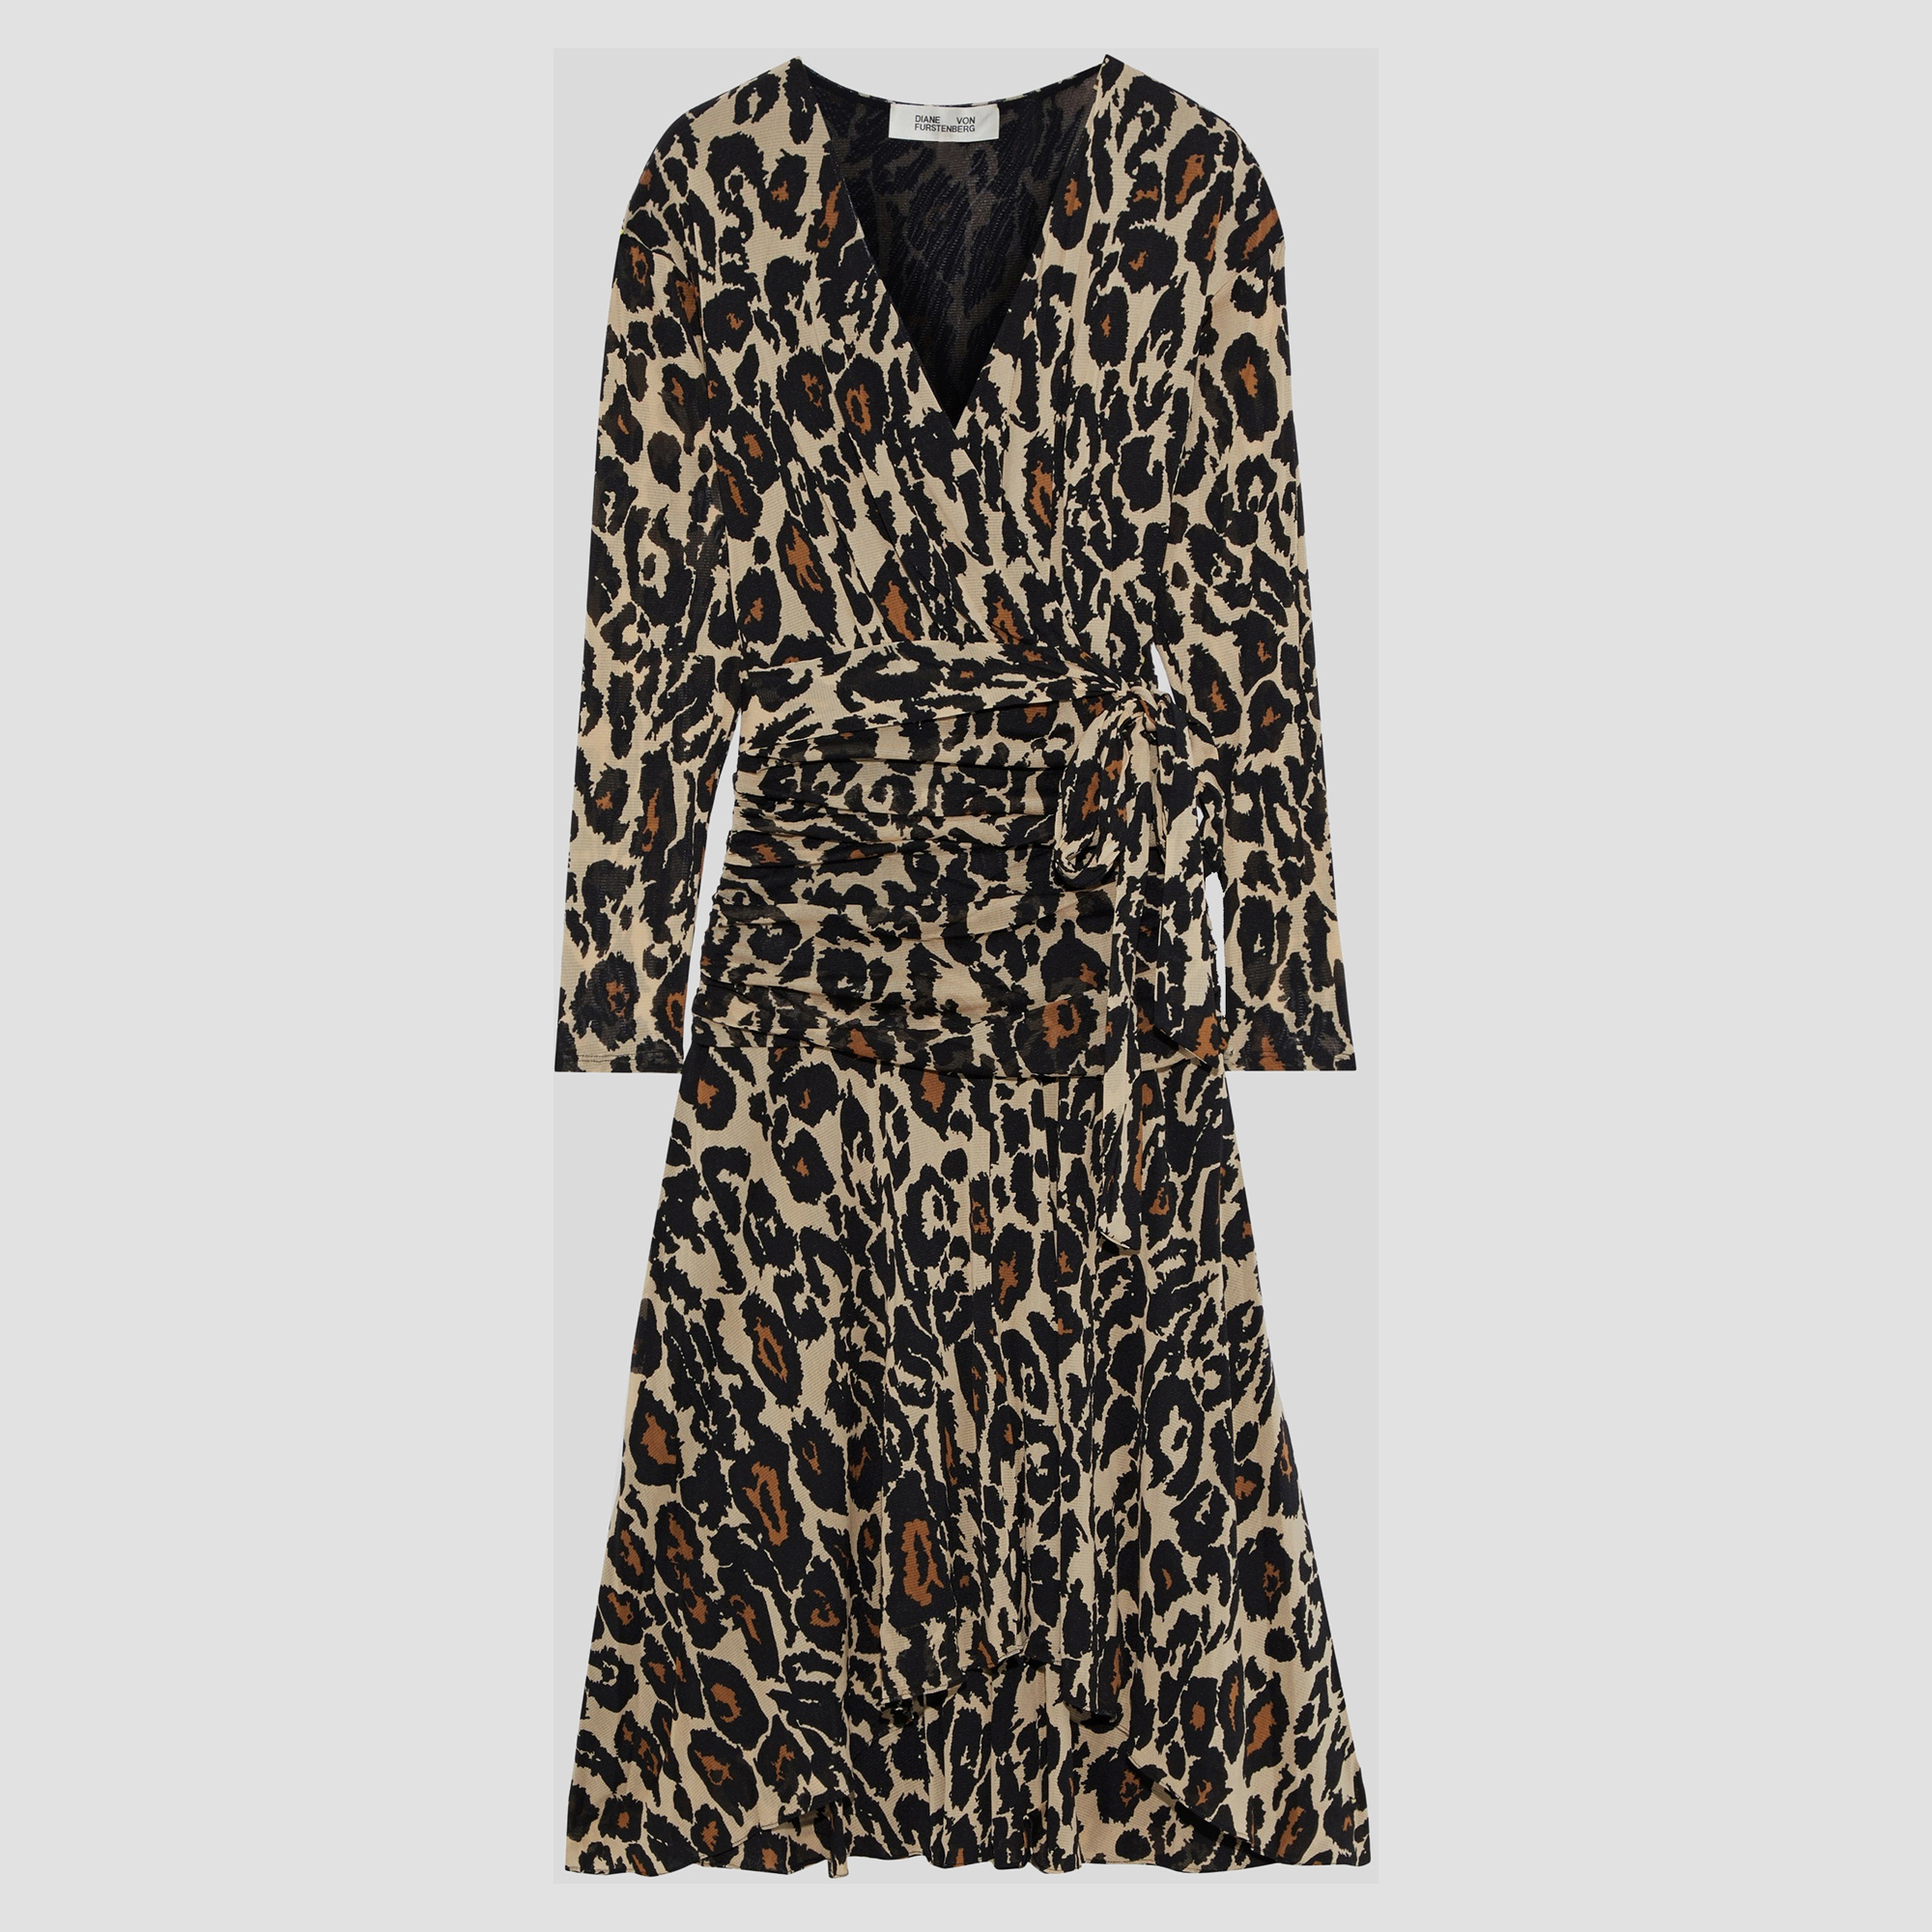 Diane von furstenberg beige leopard jersey rilynn midi dress xs